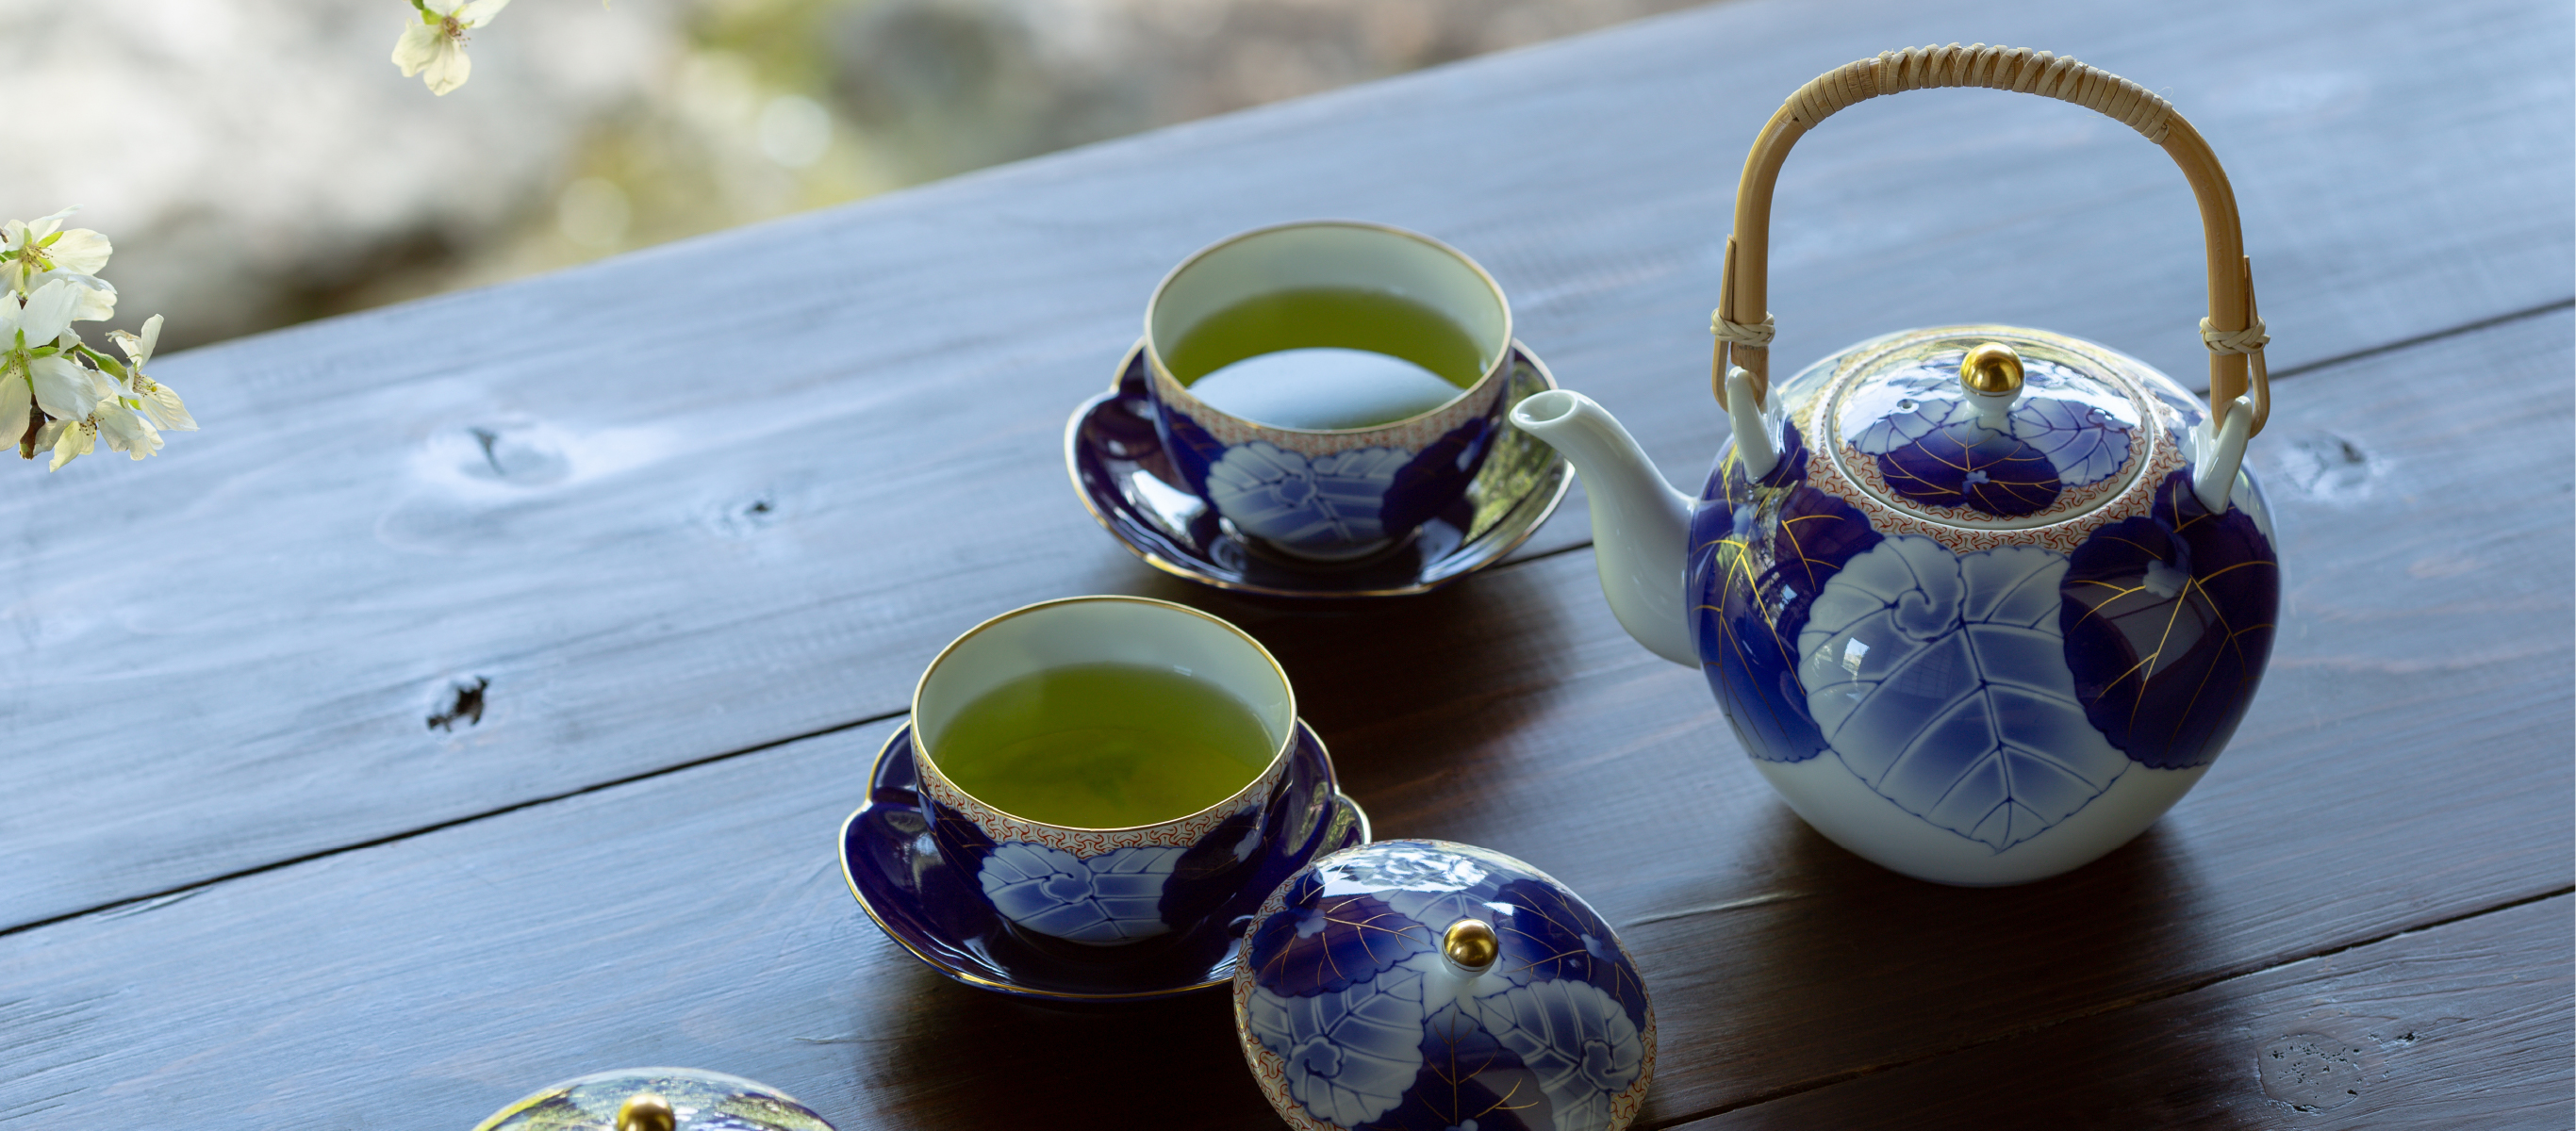 【未使用】 香蘭社  愁海棠  高級茶器と酒器セット  一級品愁海棠